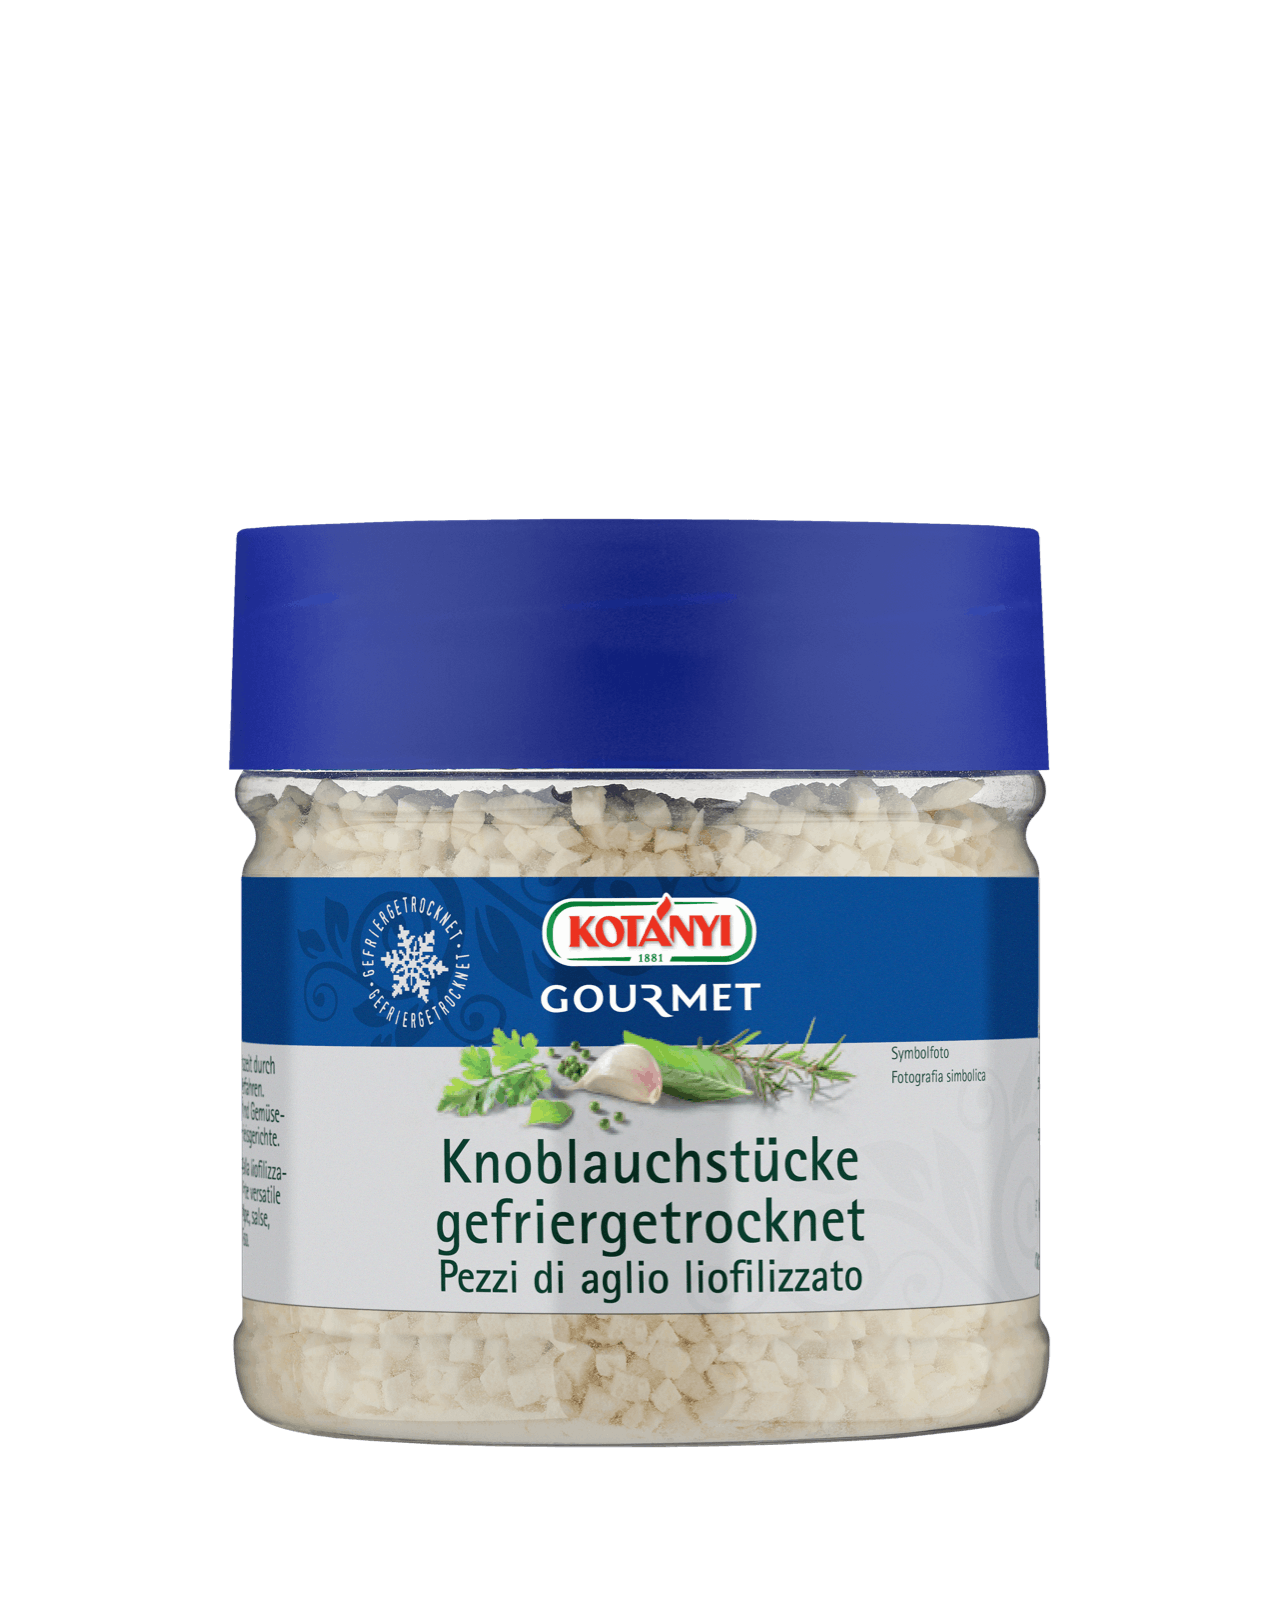 Kotányi Gourmet Knoblauchstücke gefriergetrocknet in der 400ccm Dose